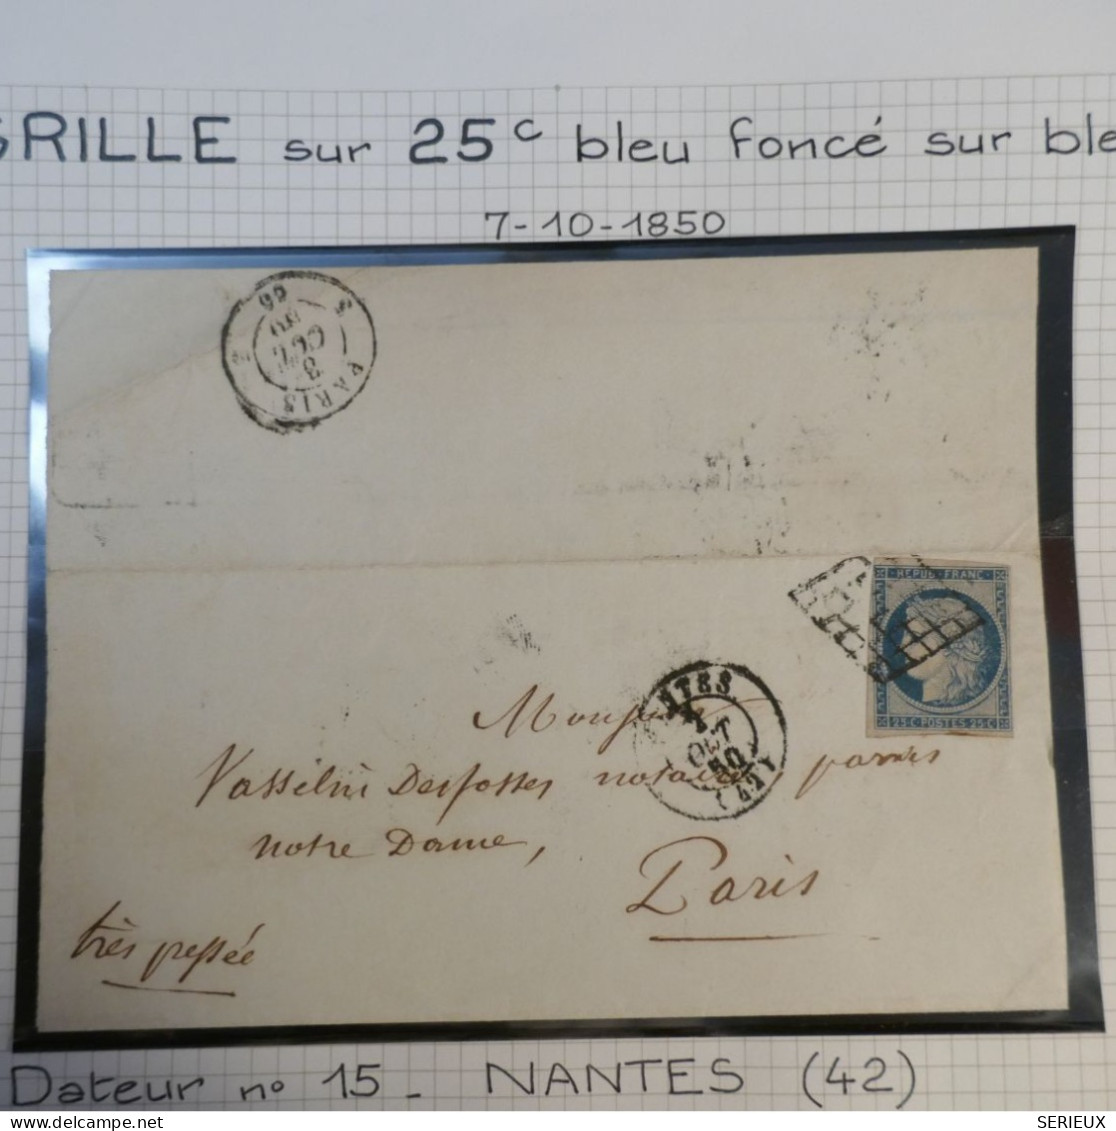 DK3 FRANCE  BELLE LETTRE RARE  7 10. 1850  NANTES A NOTRE DAME  PARIS+ N°4 FONCé + OB. GRILLE +DISPERSION DE COLLECTION+ - 1849-1876: Periodo Clásico